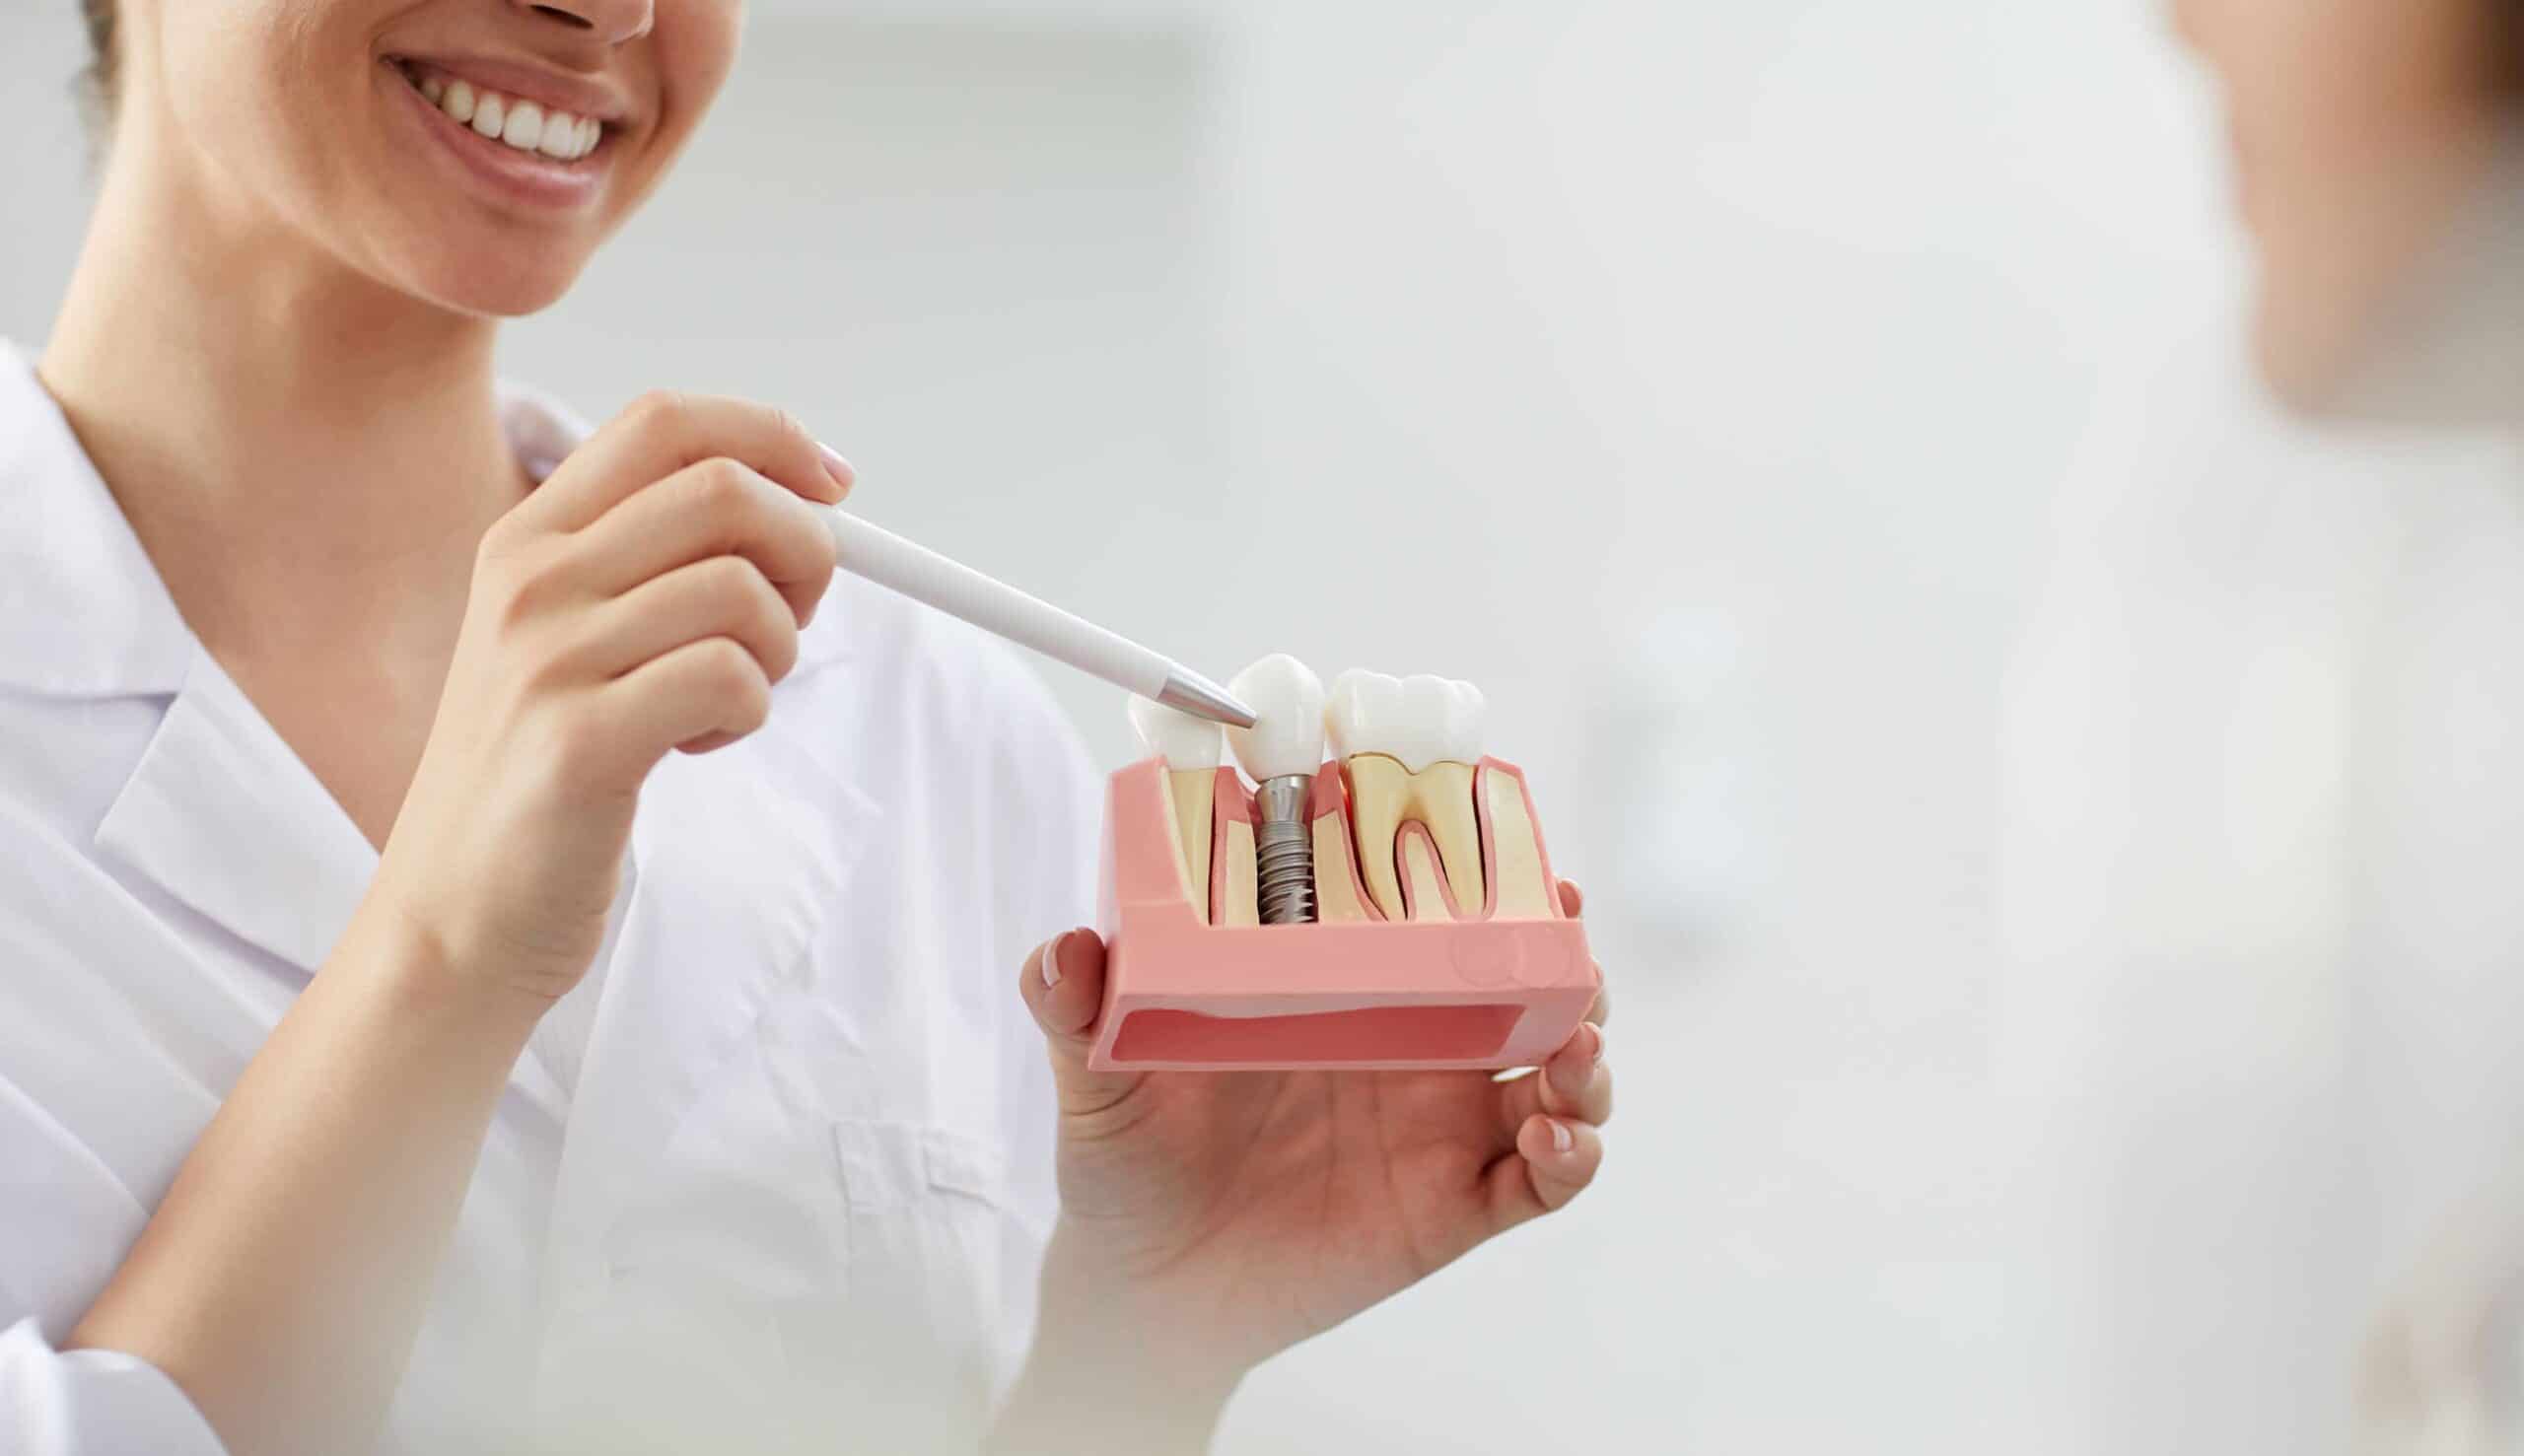 Quelle est la durée de vie d’un implant dentaire ? | Clinique dentaire Sana Oris | Paris 8